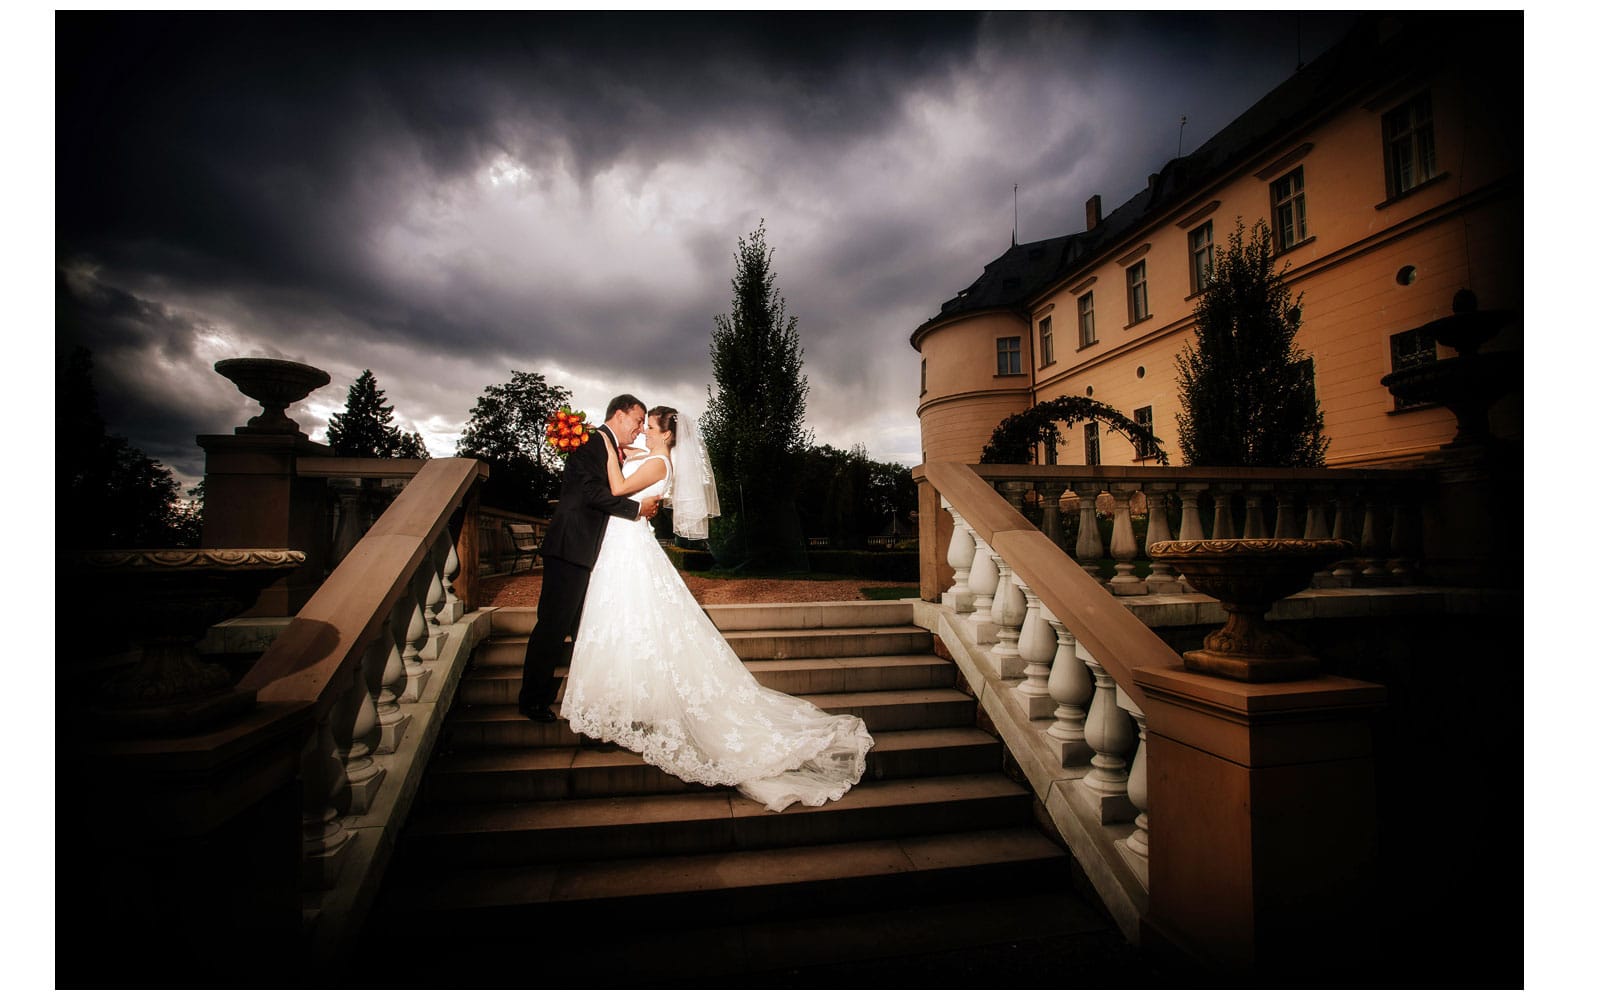 Castle Zbiroh Wedding / Paola & Alexei / wedding portraits